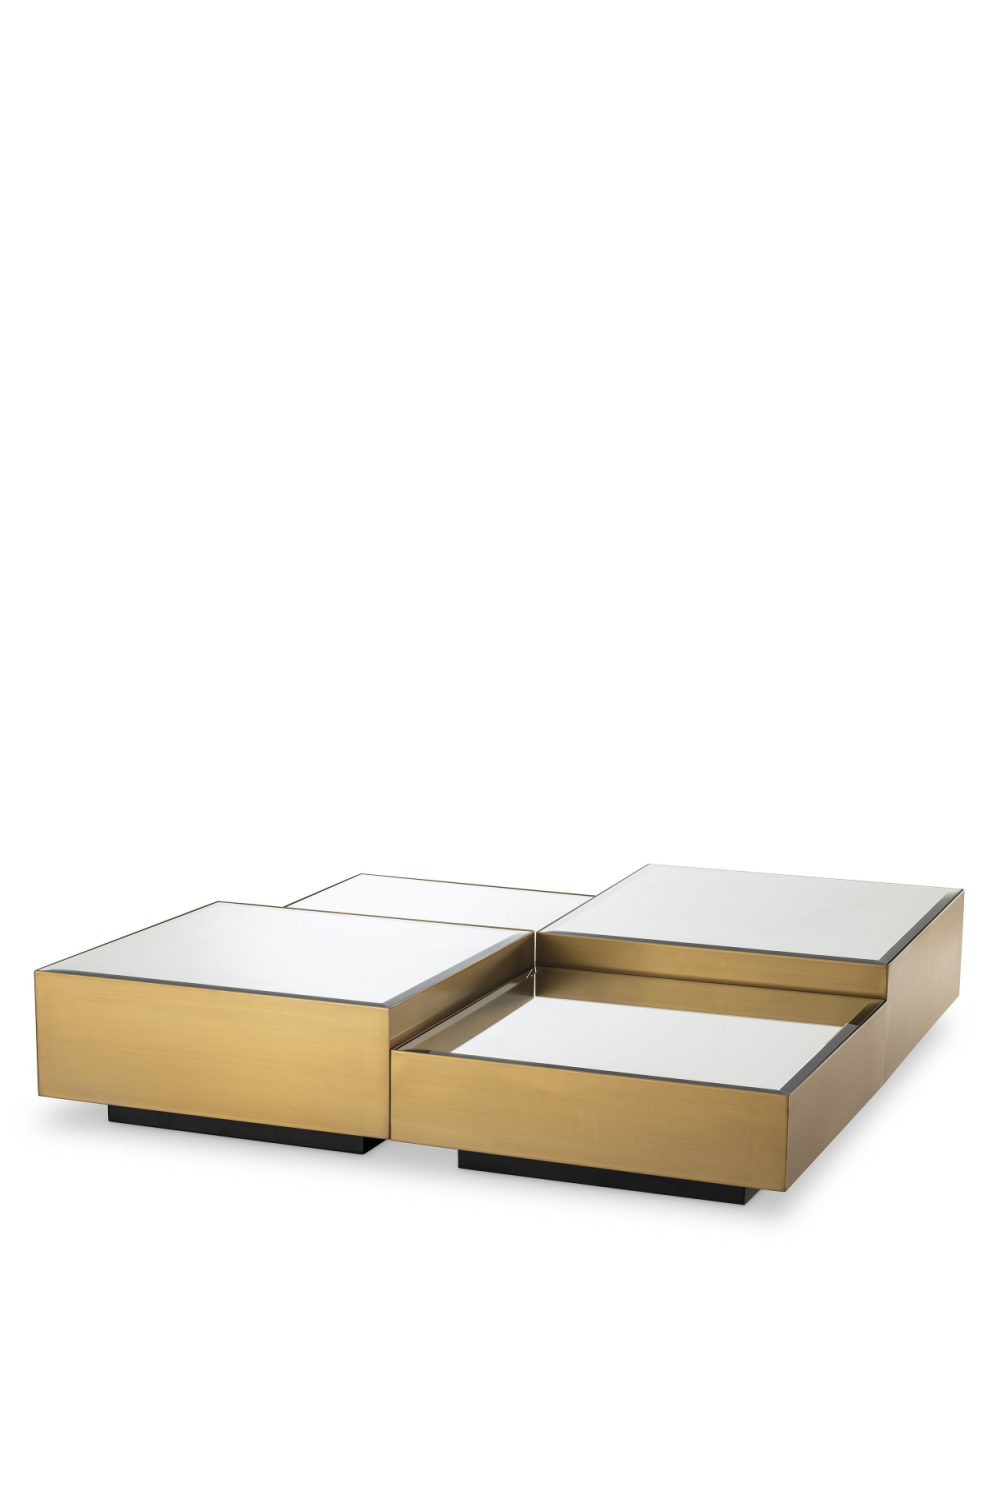 Brushed Brass Mirror Coffee Table Set of 4 | Eichholtz Esposito | OROA